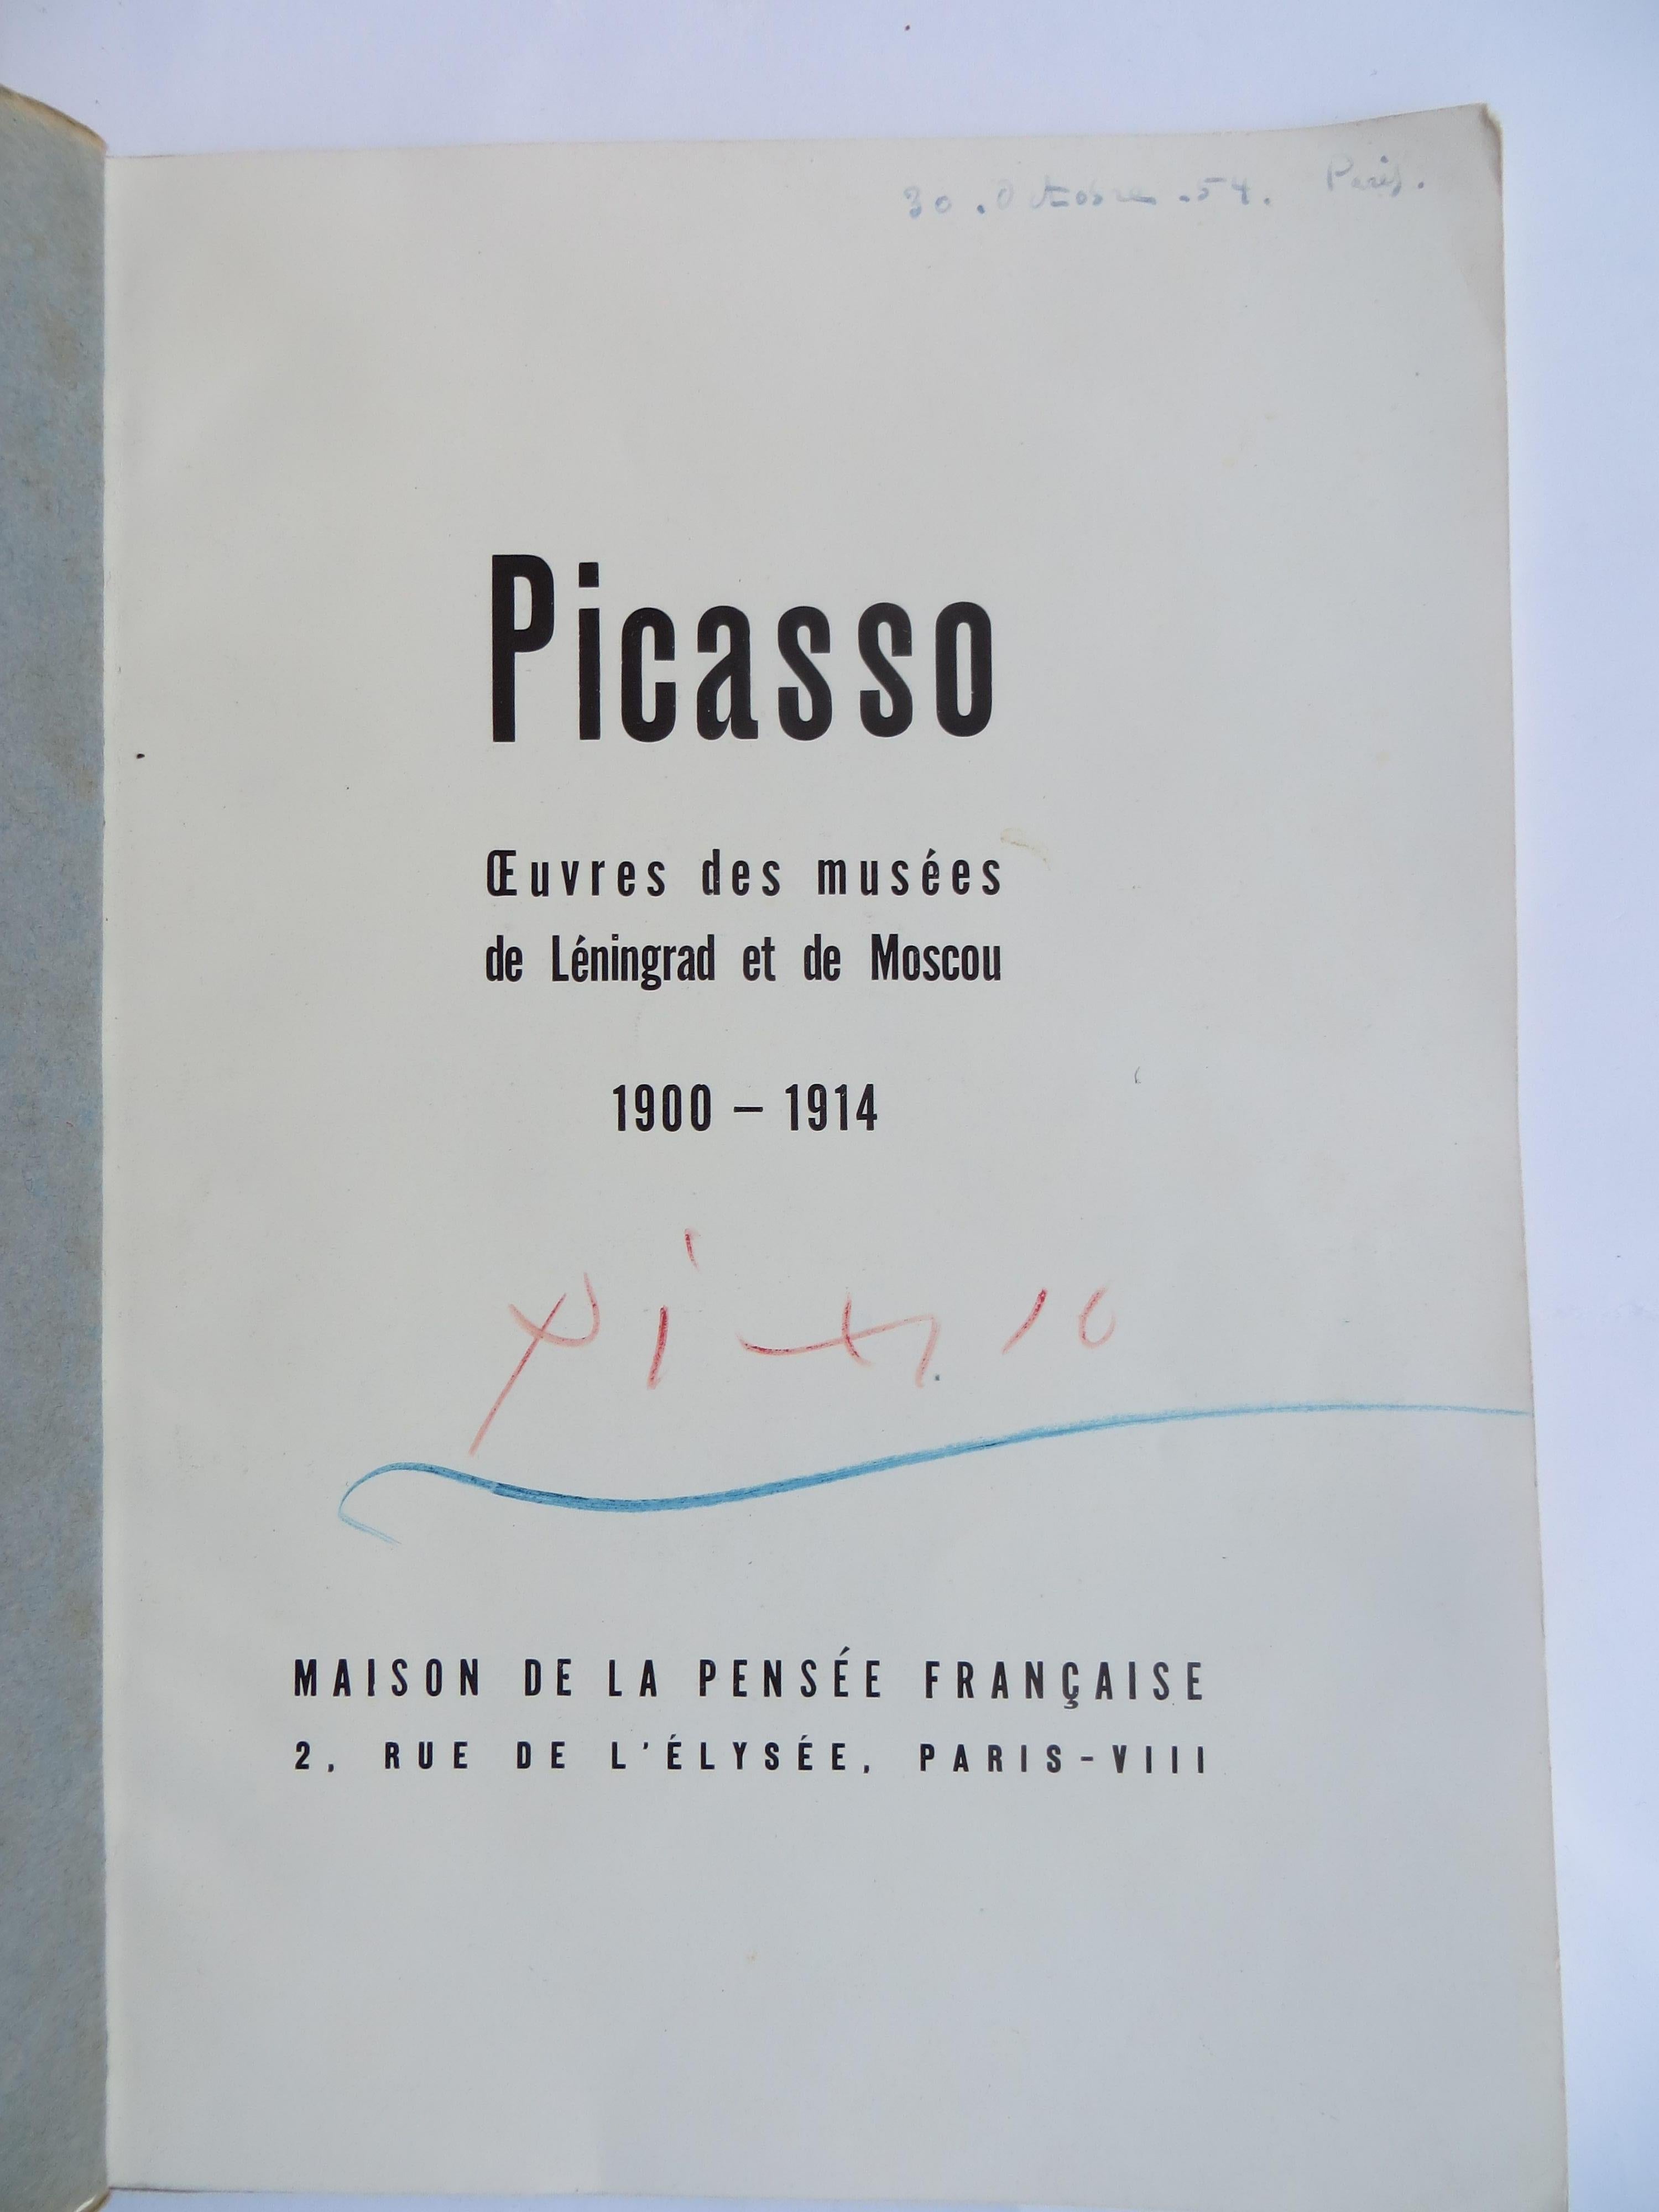 Figurative Print Pablo Picasso - Picasso. Oeuvres de 1900 à 1914. Signature écrite à la main d'Oeuvres de musees